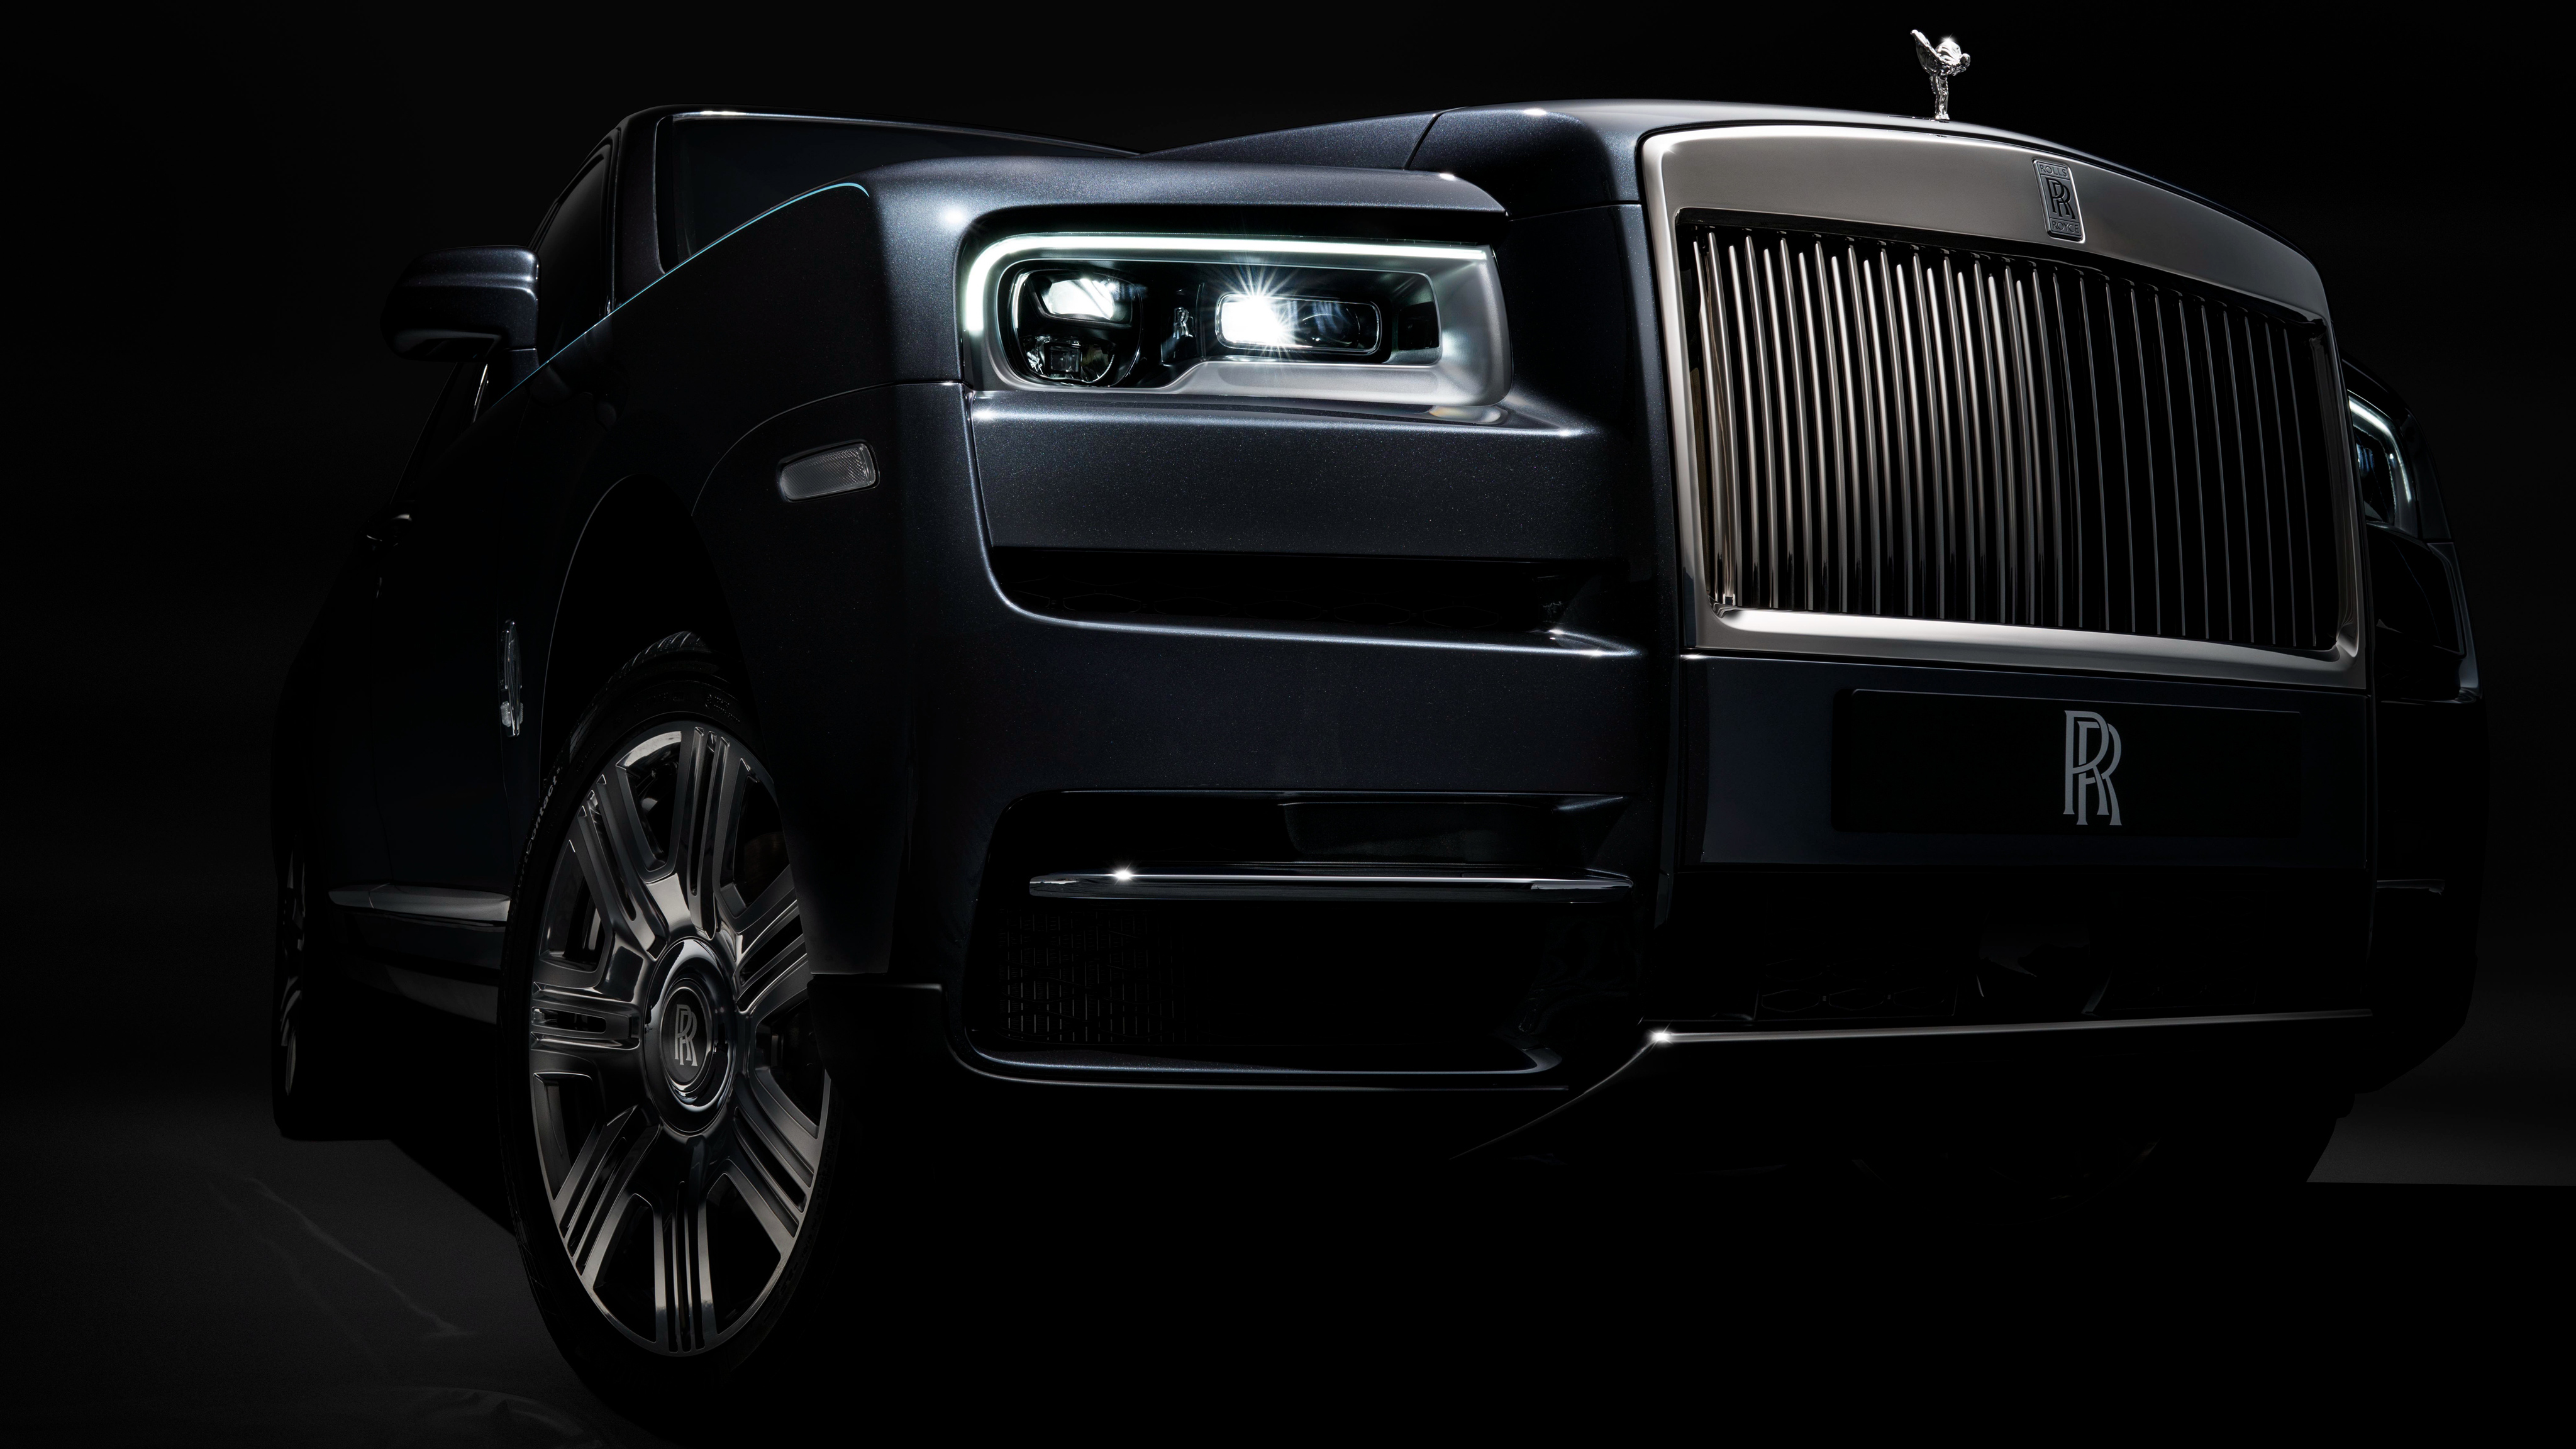 Rolls-Royce Cullinan interior specifications